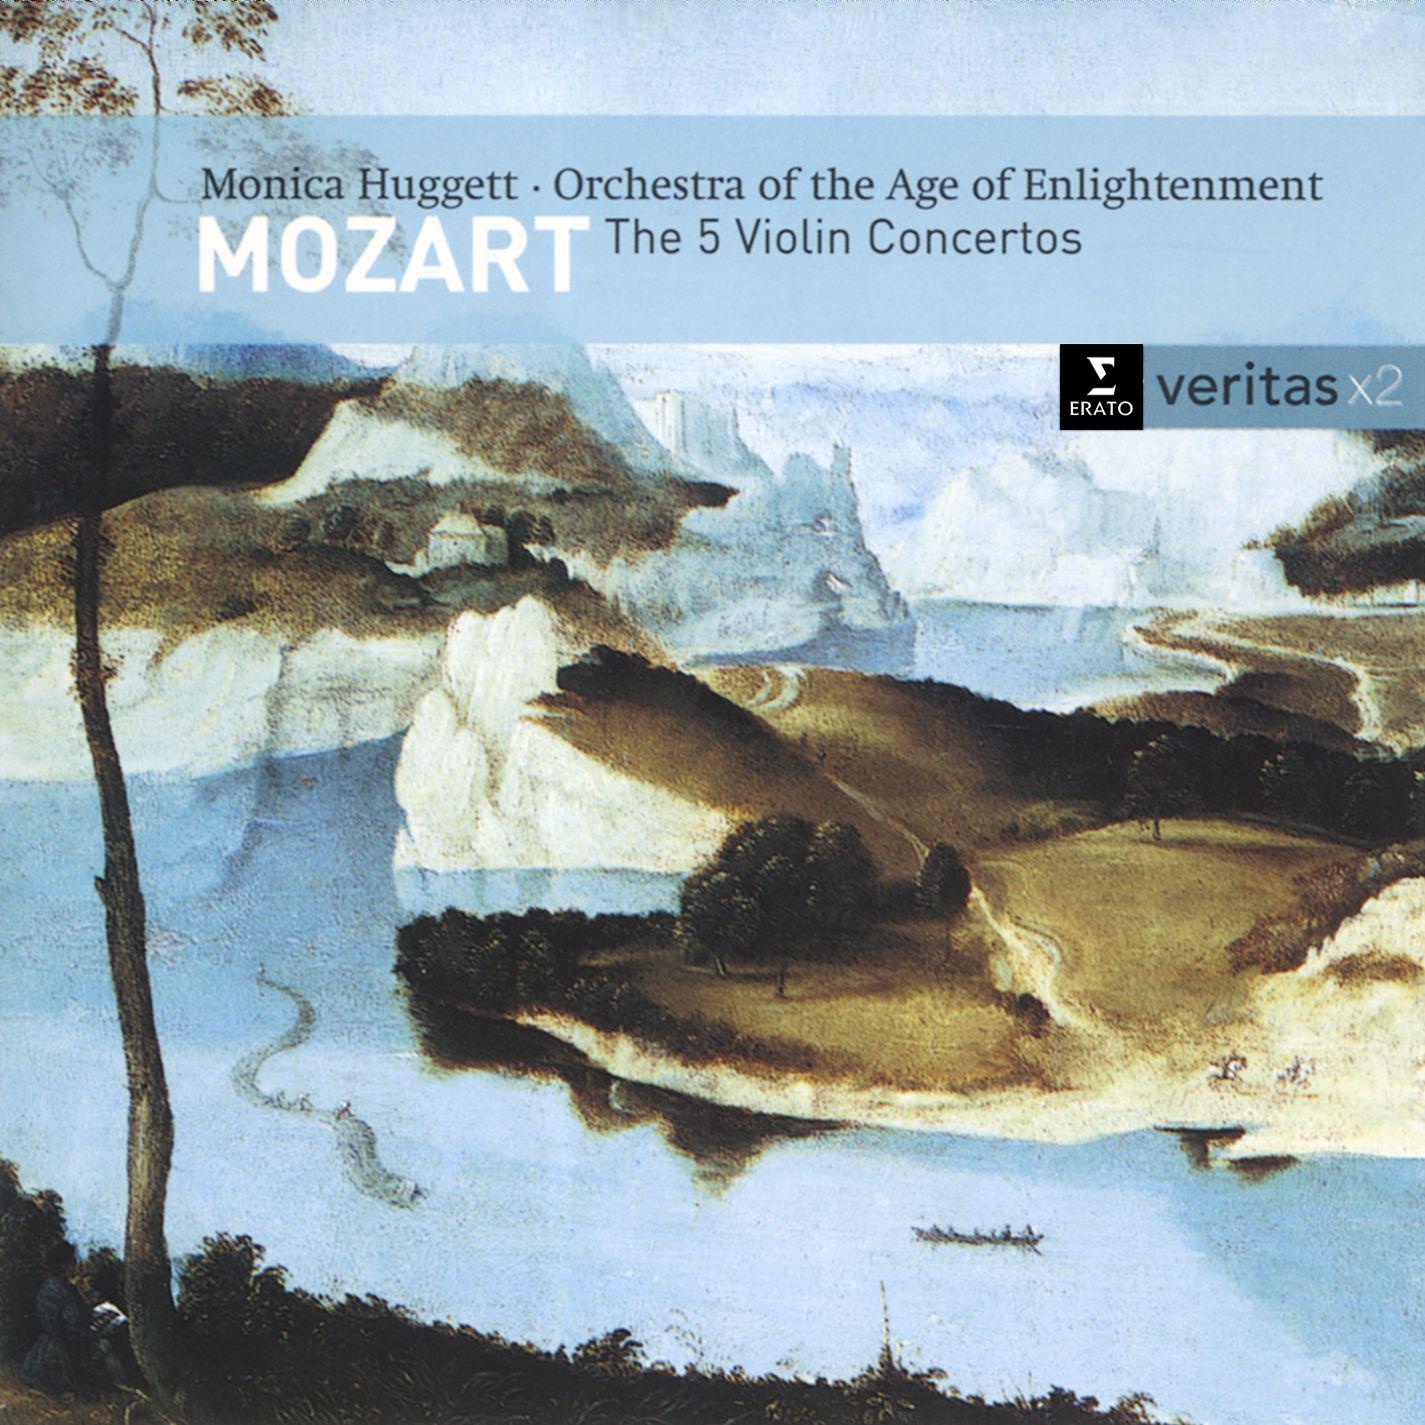 Violin Concerto No. 3 in G major K216: I. Allegro